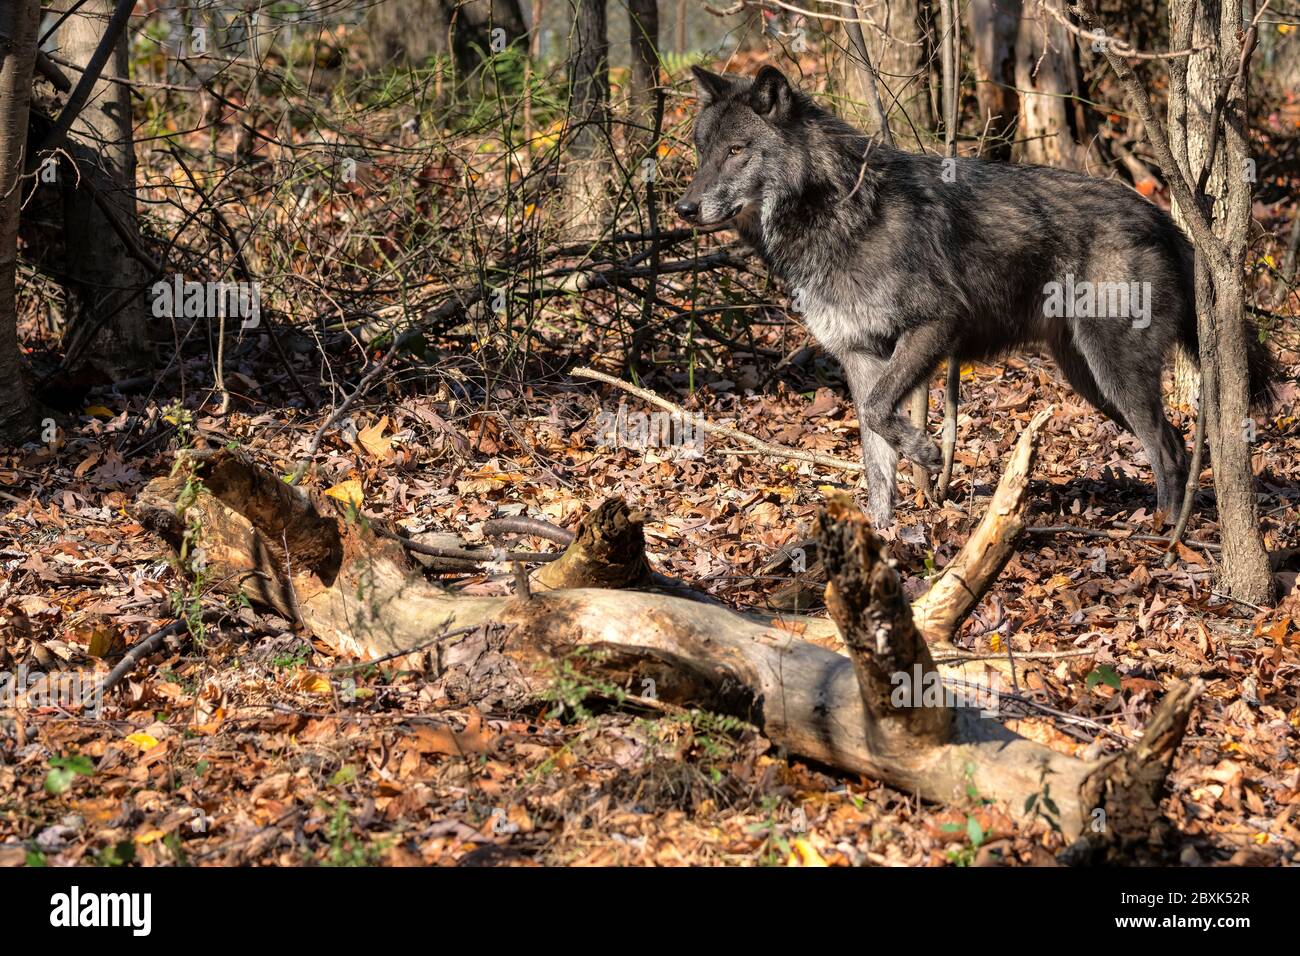 Un loup noir (loup gris) debout dans une clairière entourée d'arbres et de feuillage d'automne. Banque D'Images